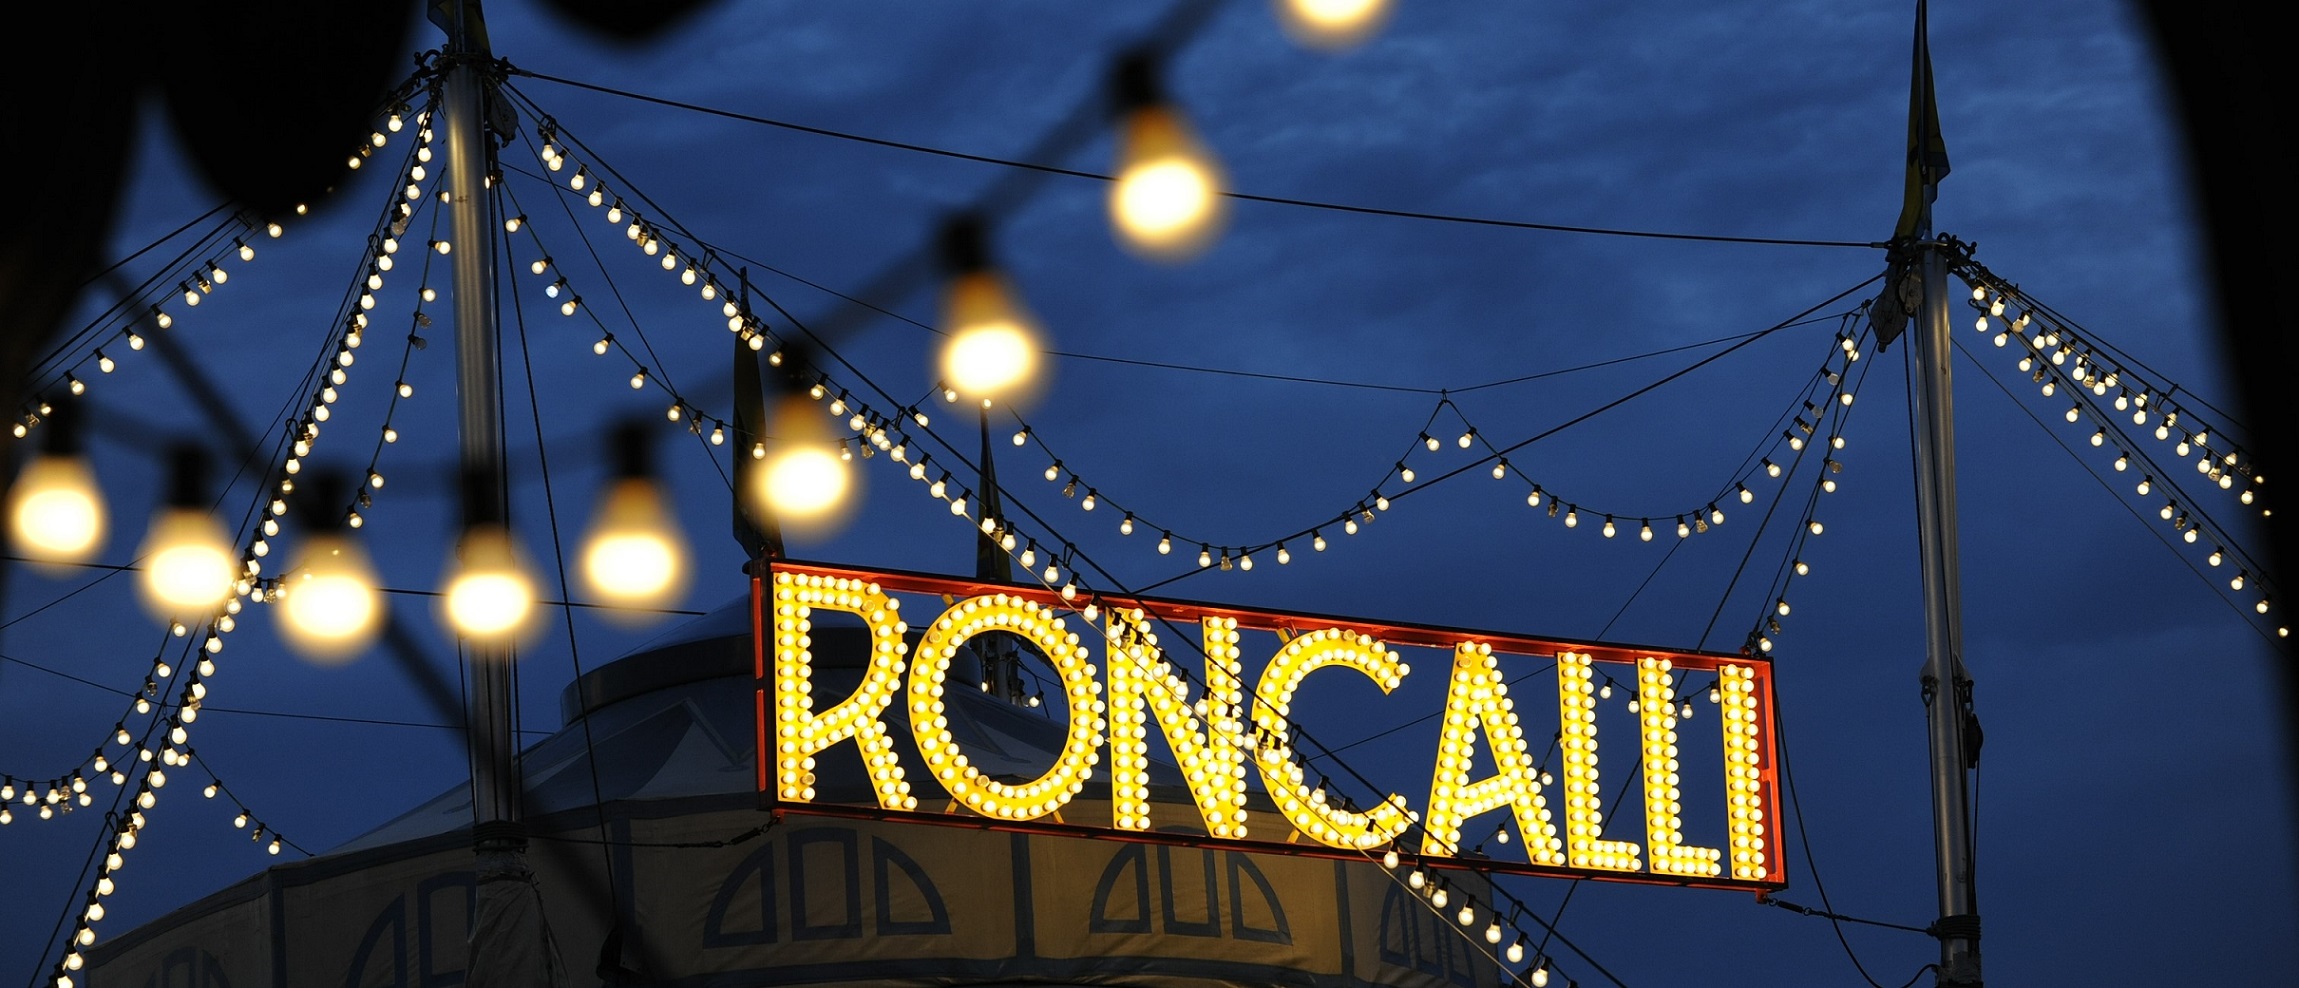 Roncalli kommt mit neuer Show